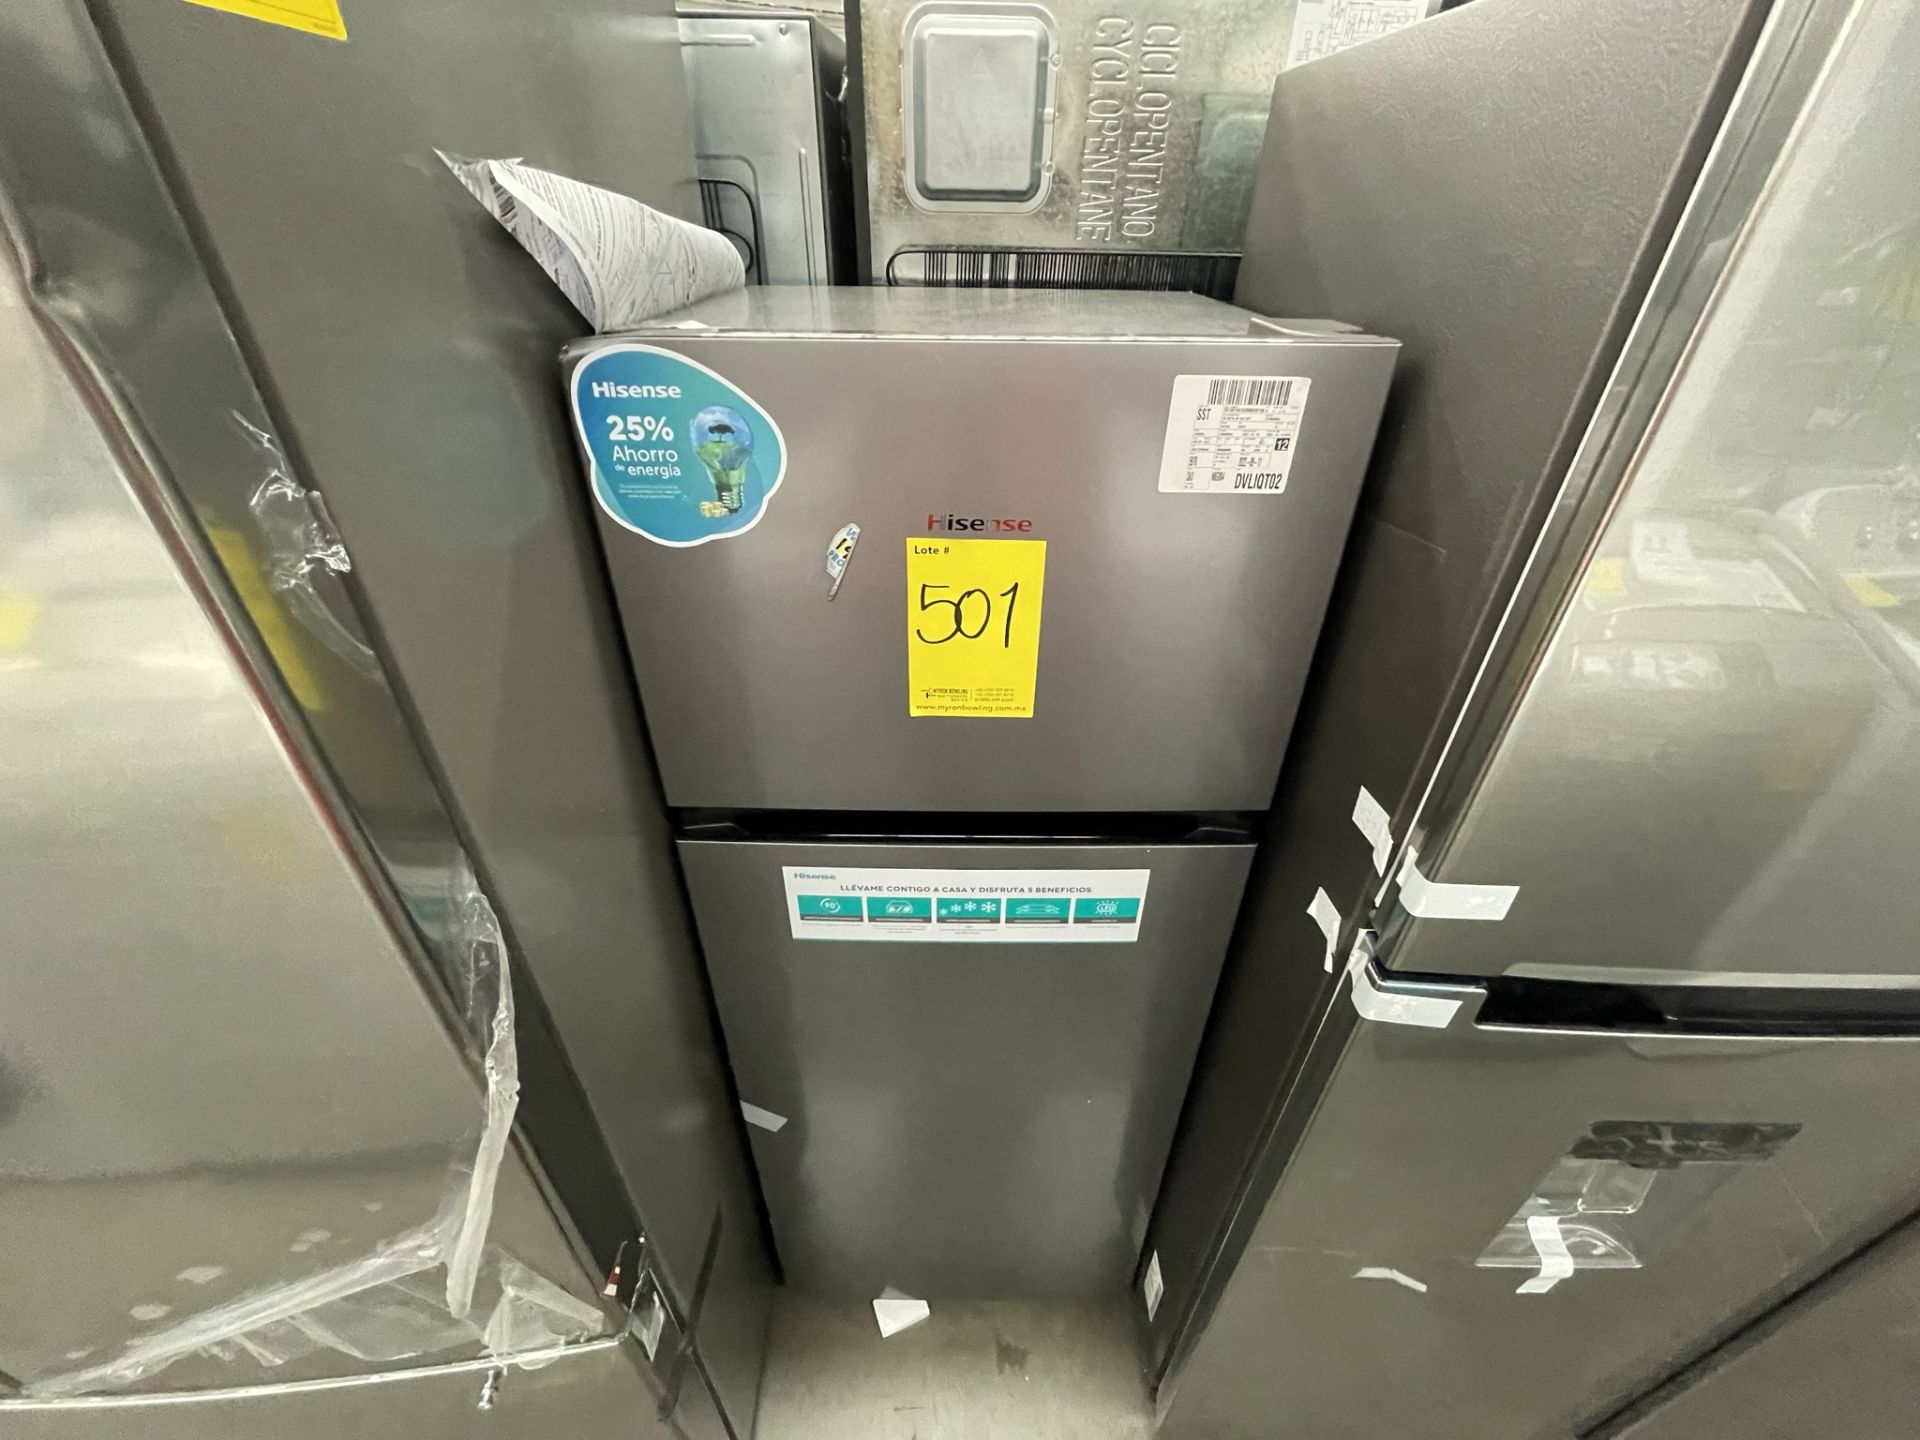 (EQUIPO NUEVO) Lote De 2 Refrigeradores Contiene: 1 Refrigerador Marca LG, Modelo GM29BP, Serie208M - Image 9 of 16